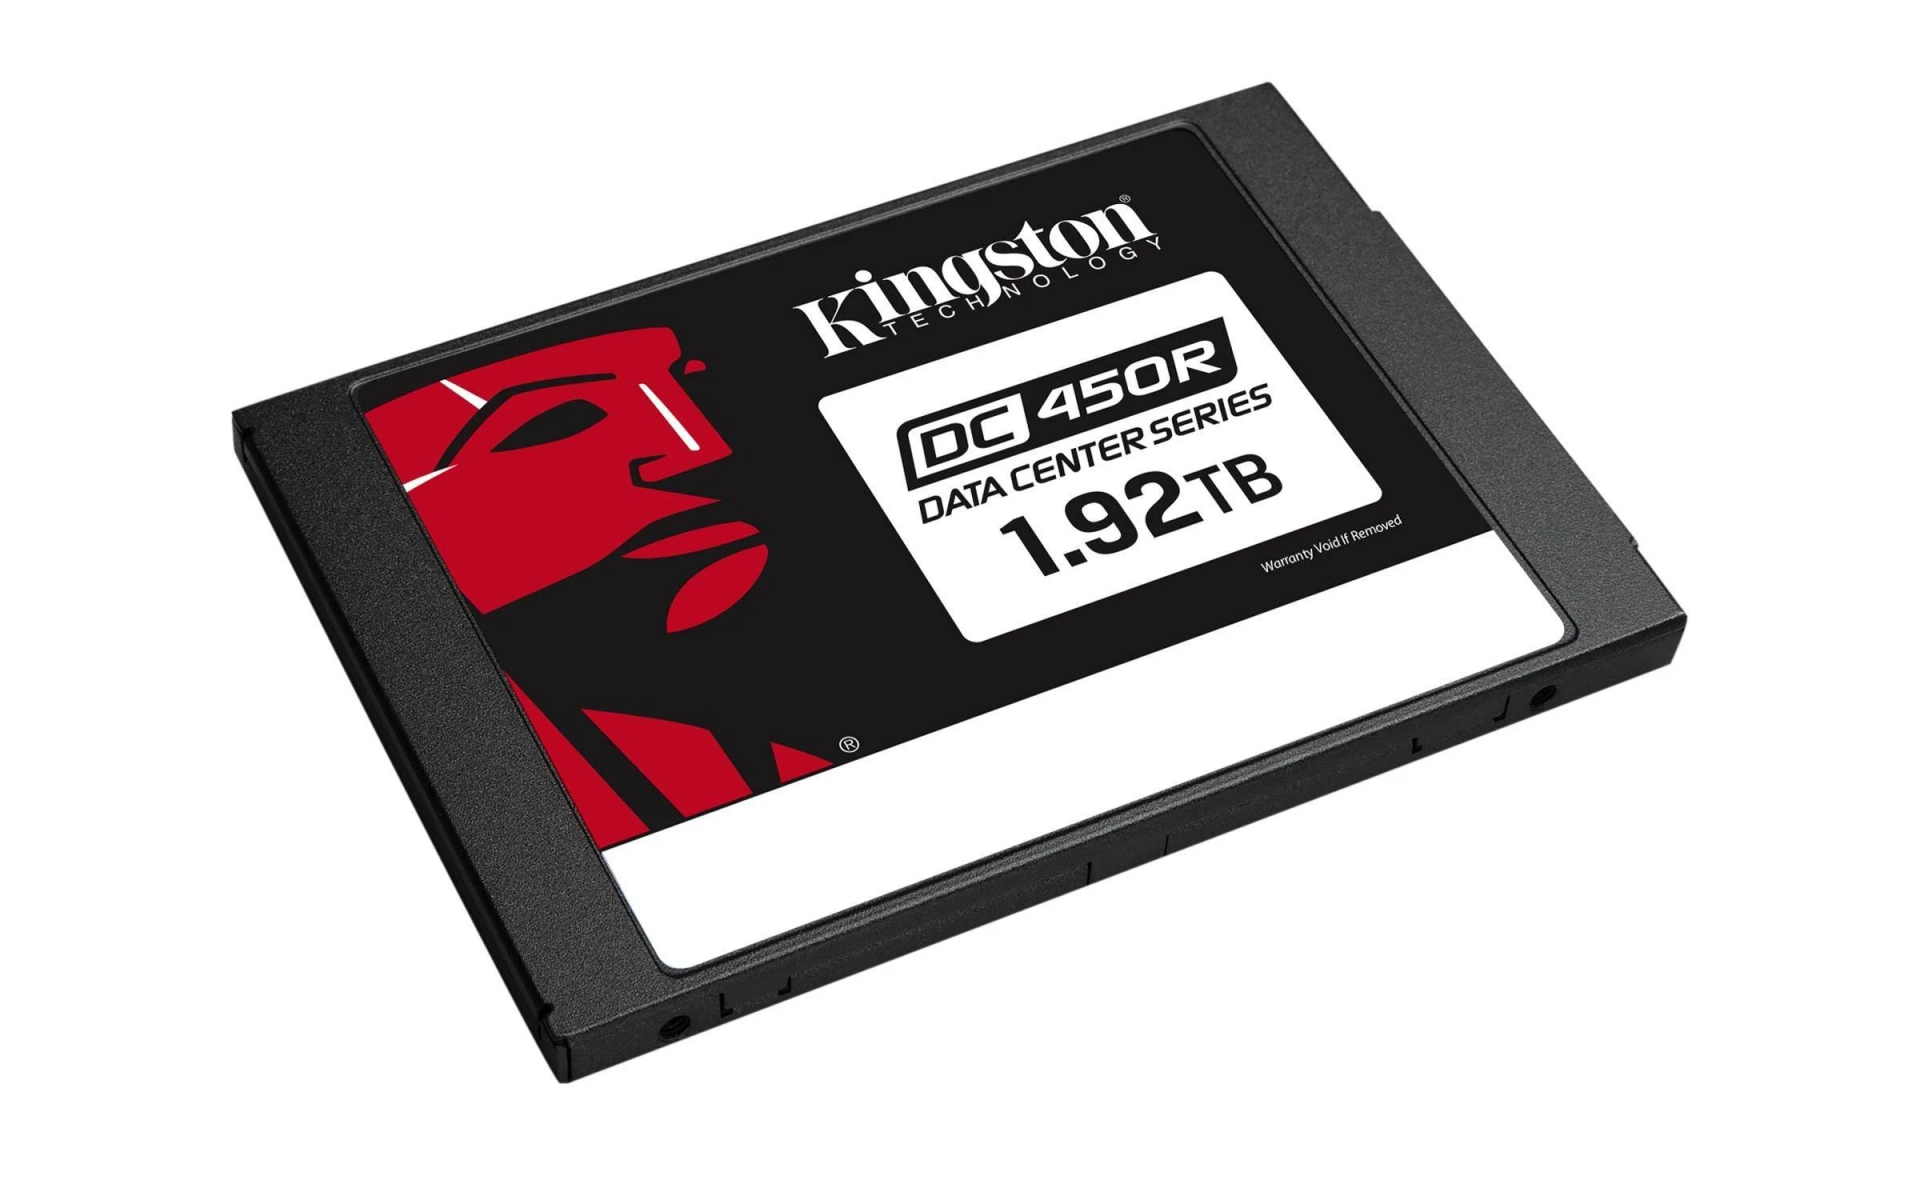 KINGSTON Data (SSD 6Gb/s, SATA - TB, Zoll, intern DC450R 2 verschlüsselt), 1.92TB SSD, 2,5 Center intern